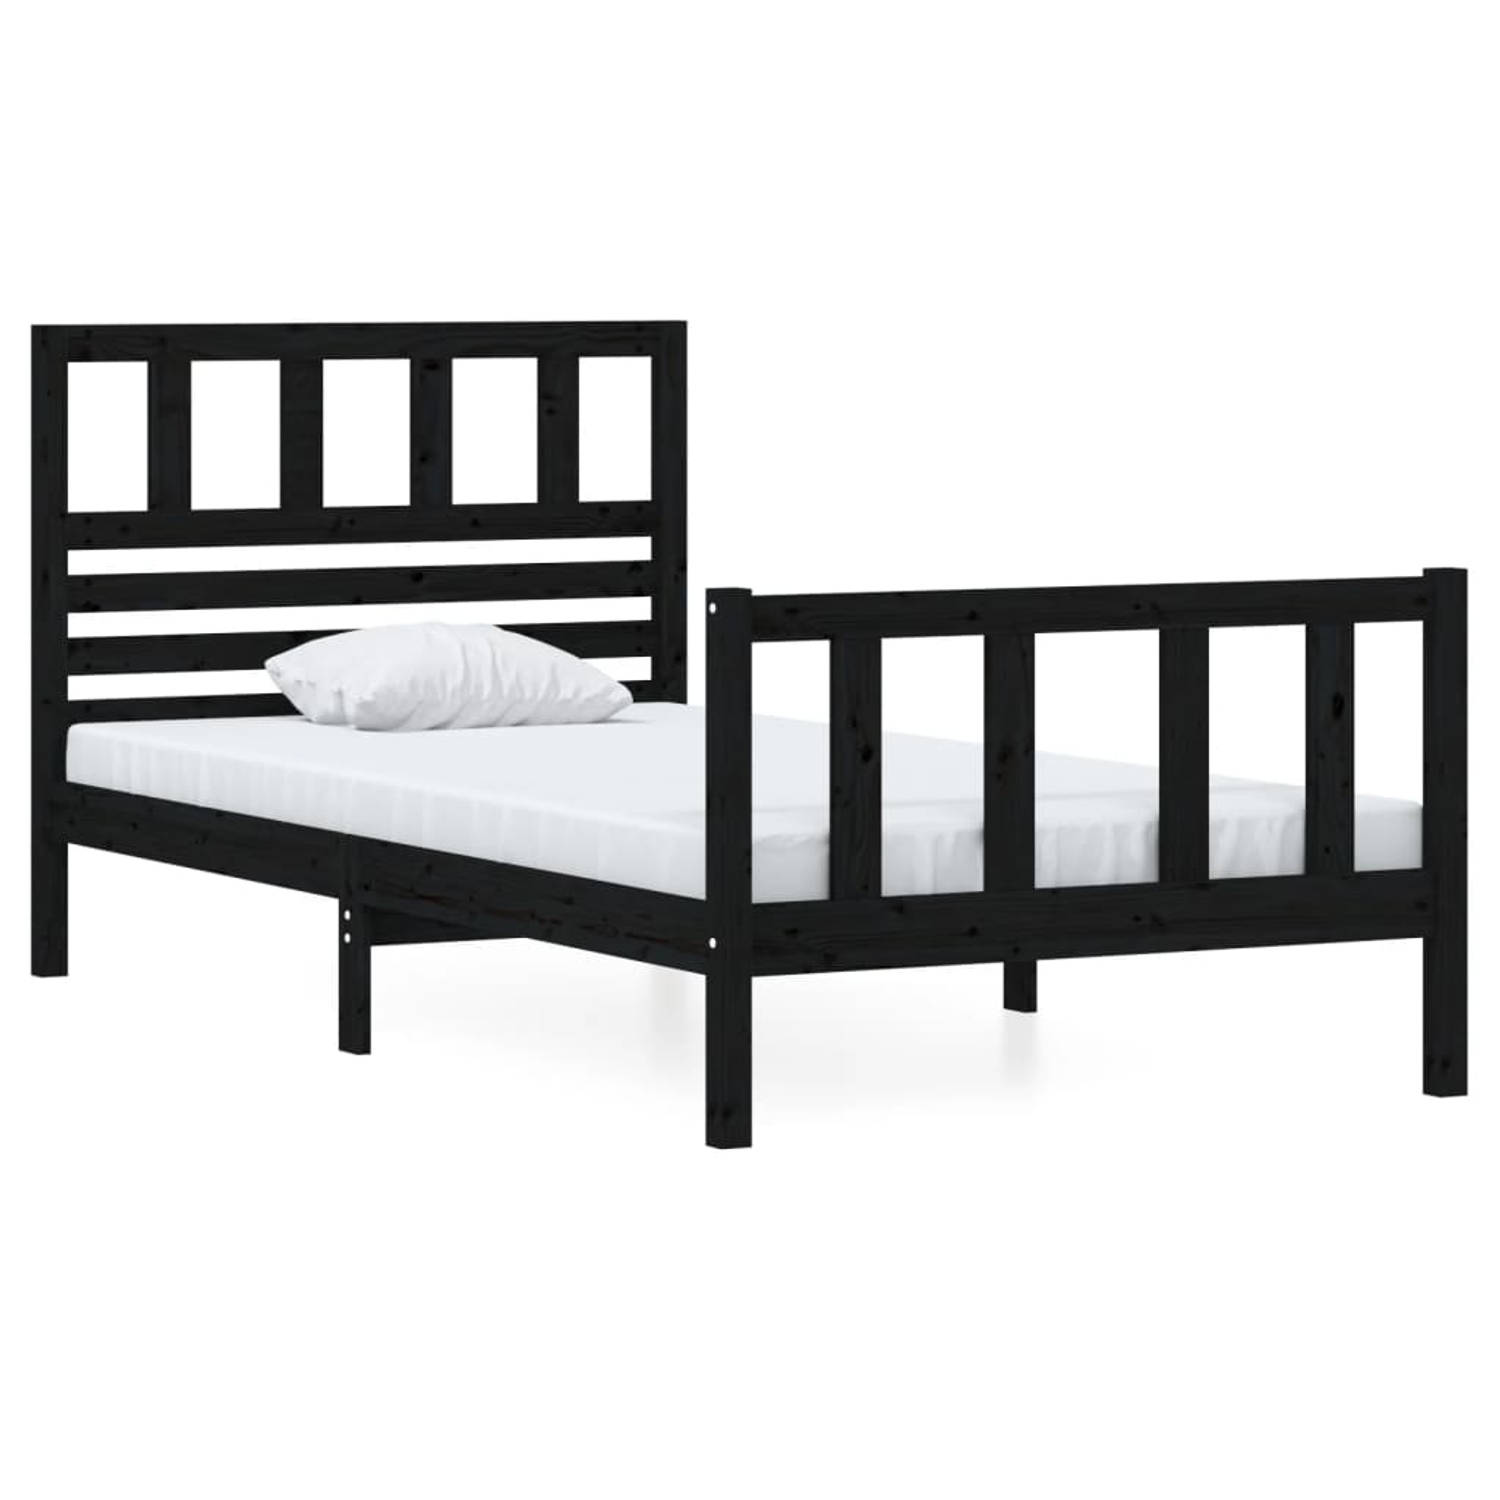 The Living Store Bedframe massief hout zwart 90x200 cm - Bedframe - Bedframes - Eenpersoonsbed - Bed - Bedombouw - Frame - Bed Frame - Ledikant - Bedframe Met Hoofdeinde - Eenperso